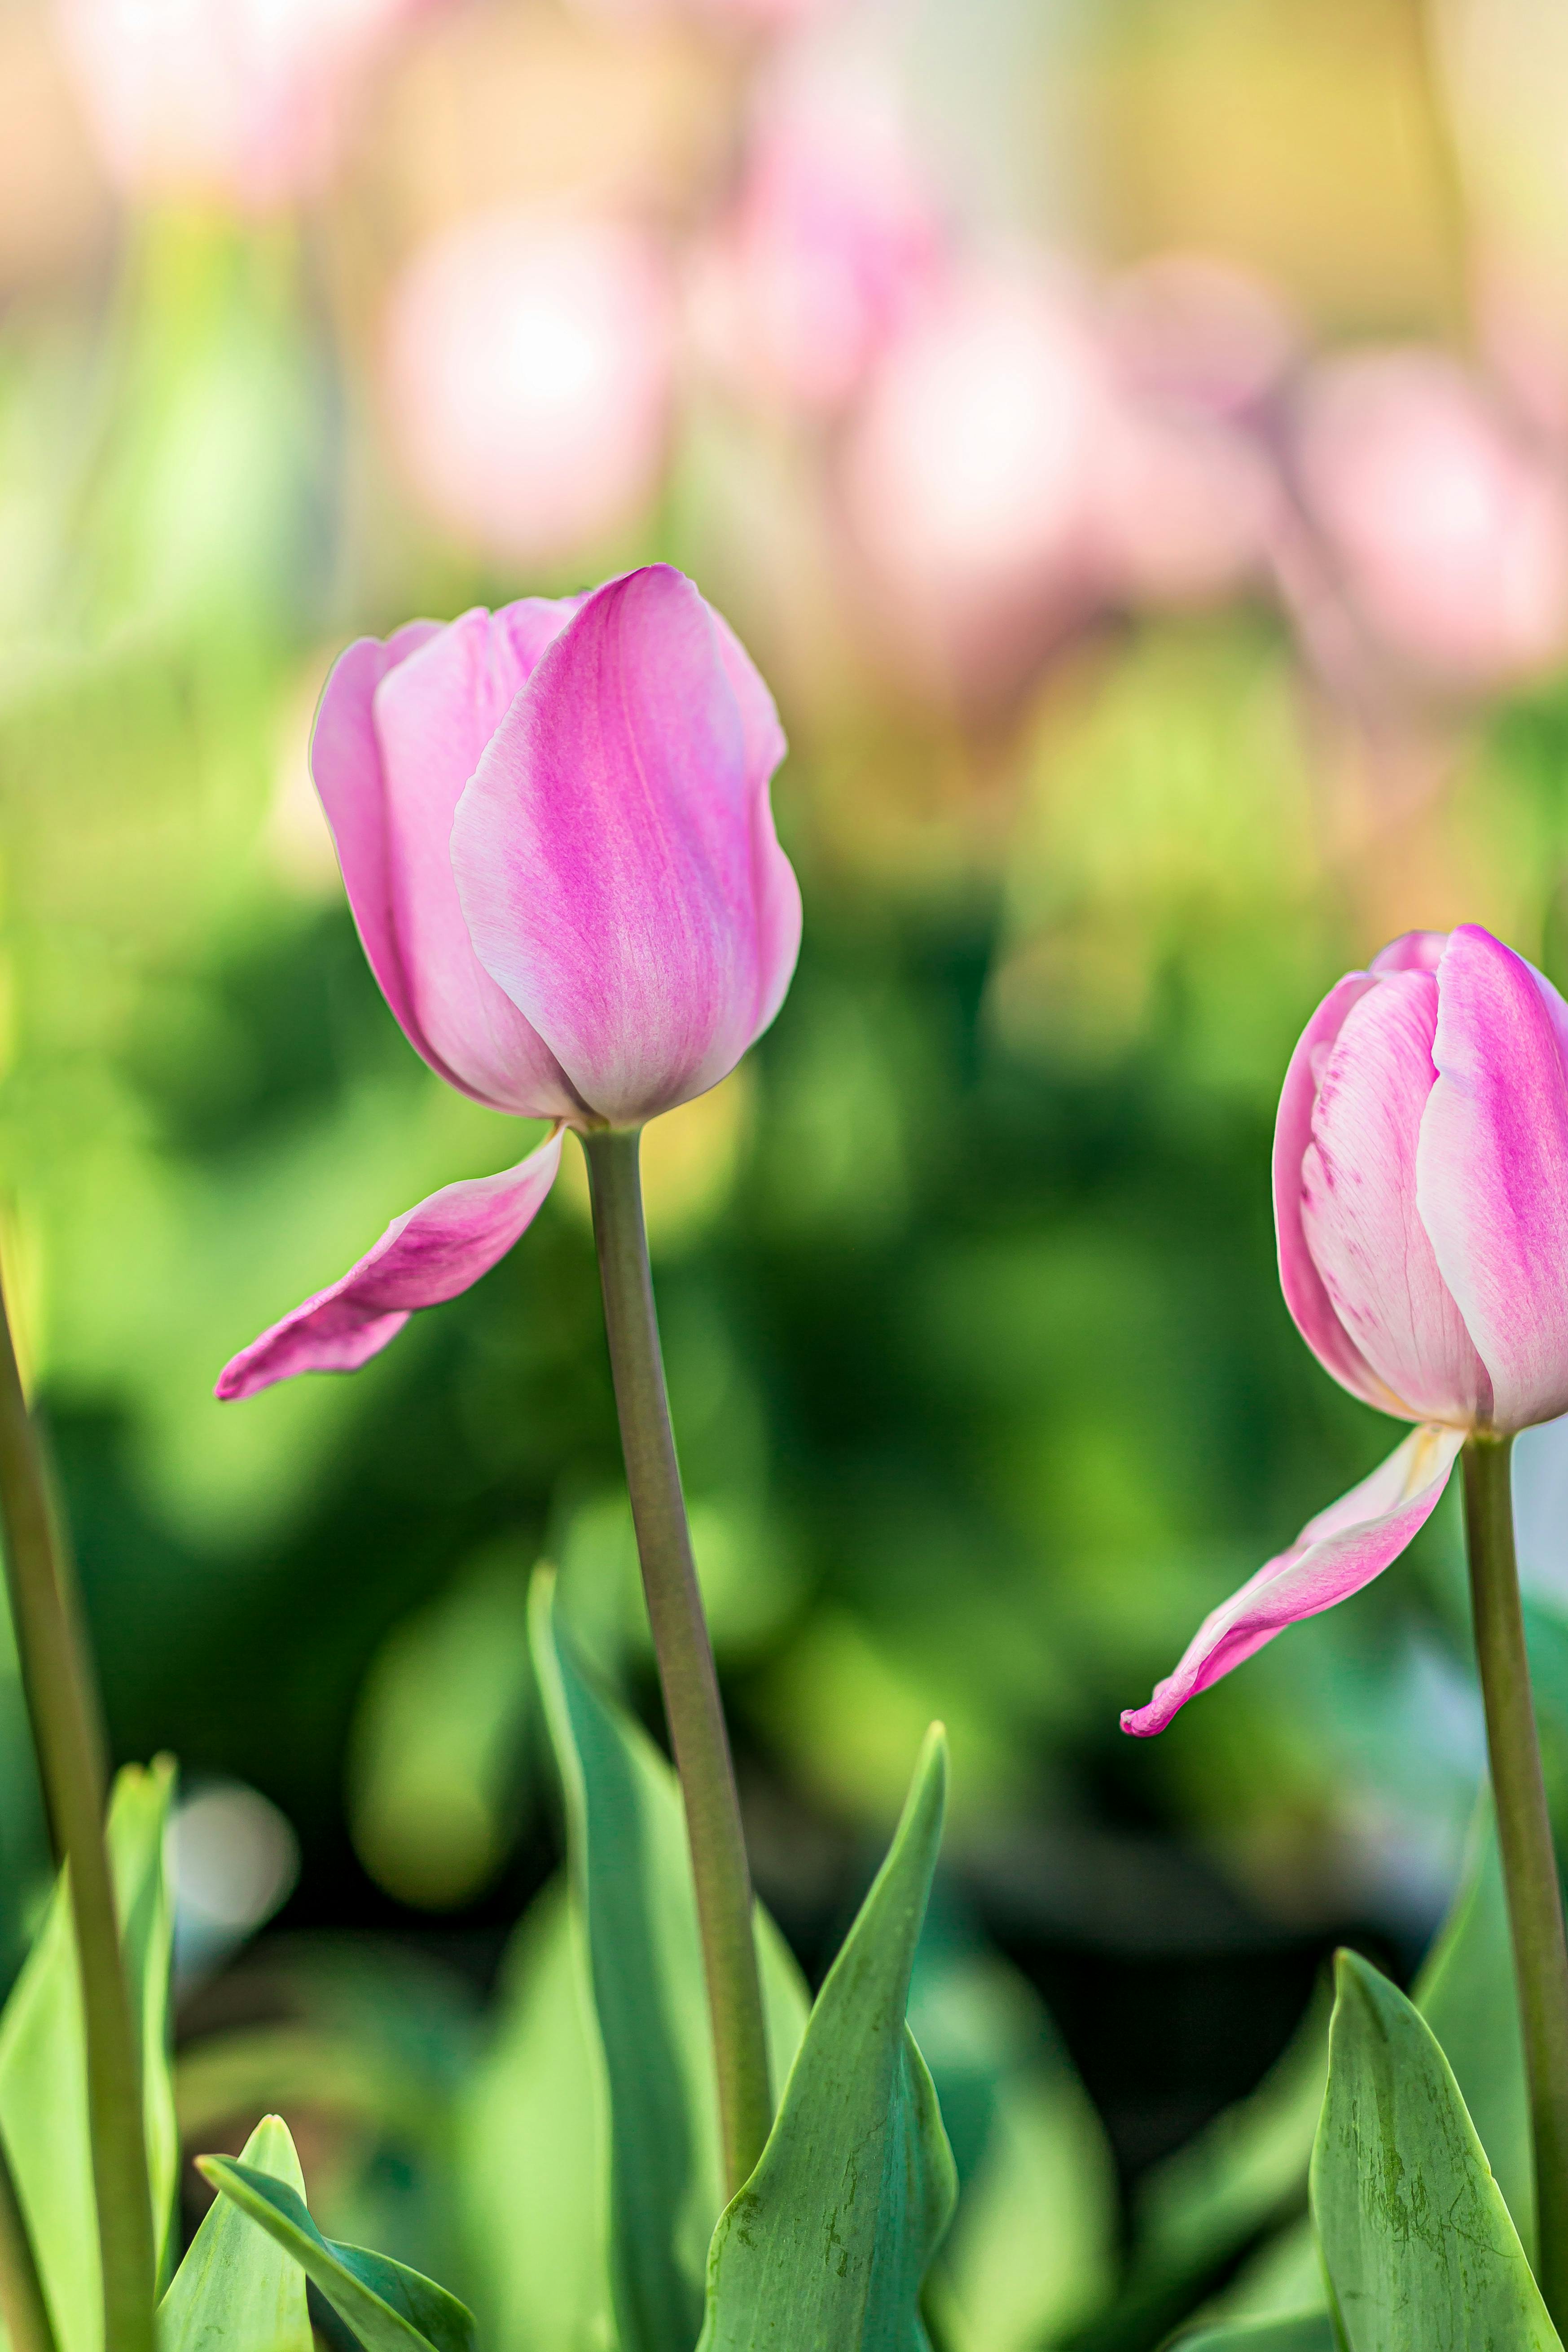 Hoa tulip hồng: Hình ảnh chụp ghi lại vẻ đẹp tuyệt vời của loài hoa tulip hồng sẽ khiến bạn ngất ngây. Bộ ảnh này sẽ mang đến cho bạn cảm giác yên bình, nhẹ nhàng và phóng khoáng. Xem chi tiết về bức ảnh để khám phá thêm những chi tiết đỏ thẫm của hoa tulip rực rỡ này.